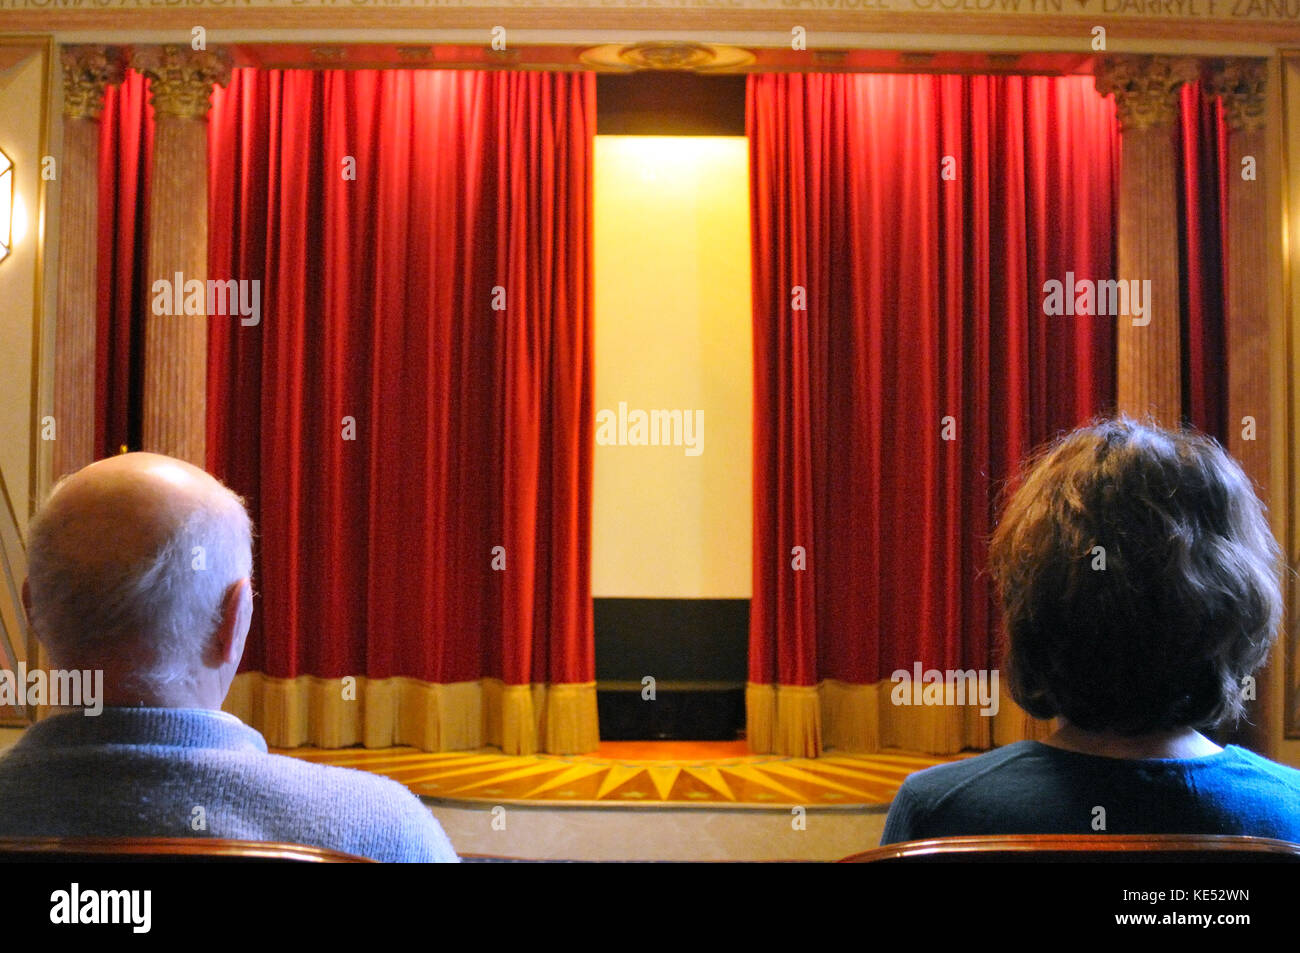 Des rideaux rouges de velours légèrement ouverte montre homme et femme regardant dans salle de cinéma construit en 1920, début des années 1930 style. Bien éclairée. Banque D'Images